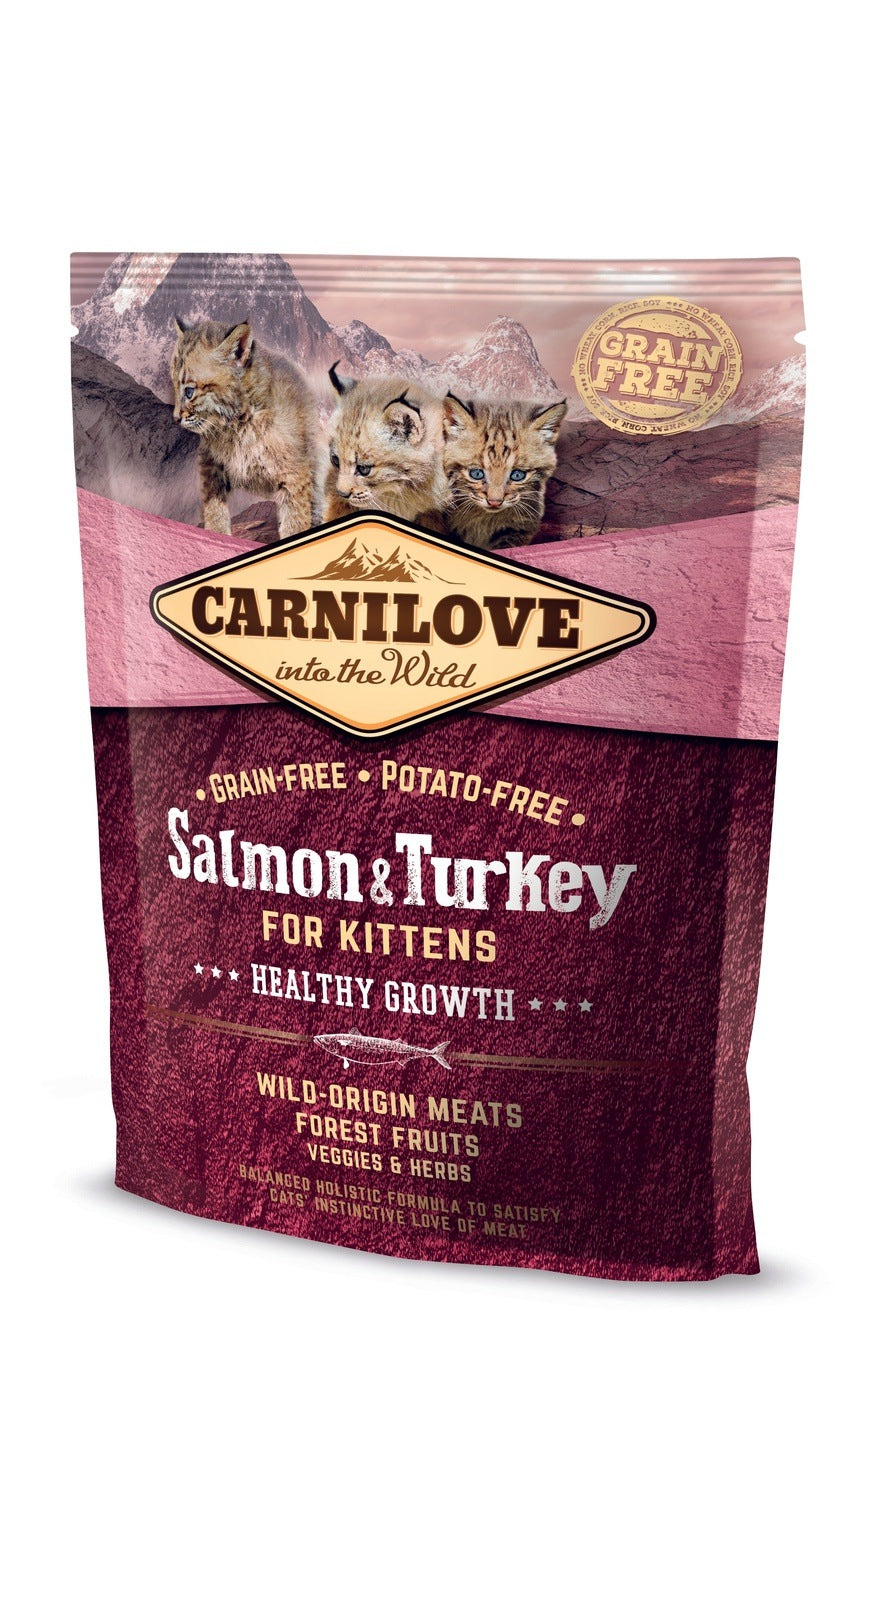 Artikel mit dem Namen Carnilove Cat Kitten - Lachs &amp; Truthahn im Shop von zoo.de , dem Onlineshop für nachhaltiges Hundefutter und Katzenfutter.